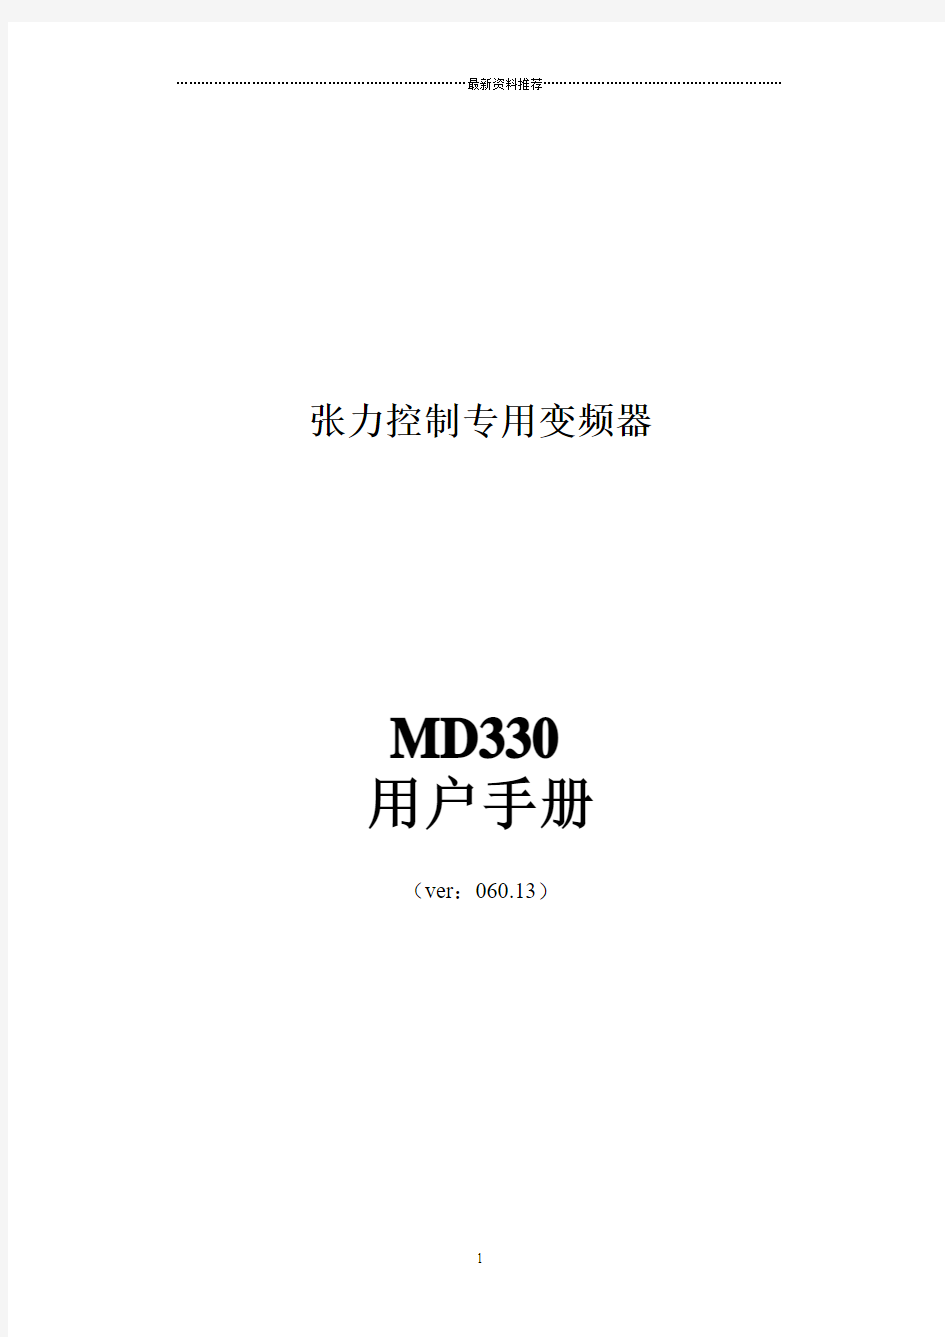 汇川MD330变频器说明书(新)精编版